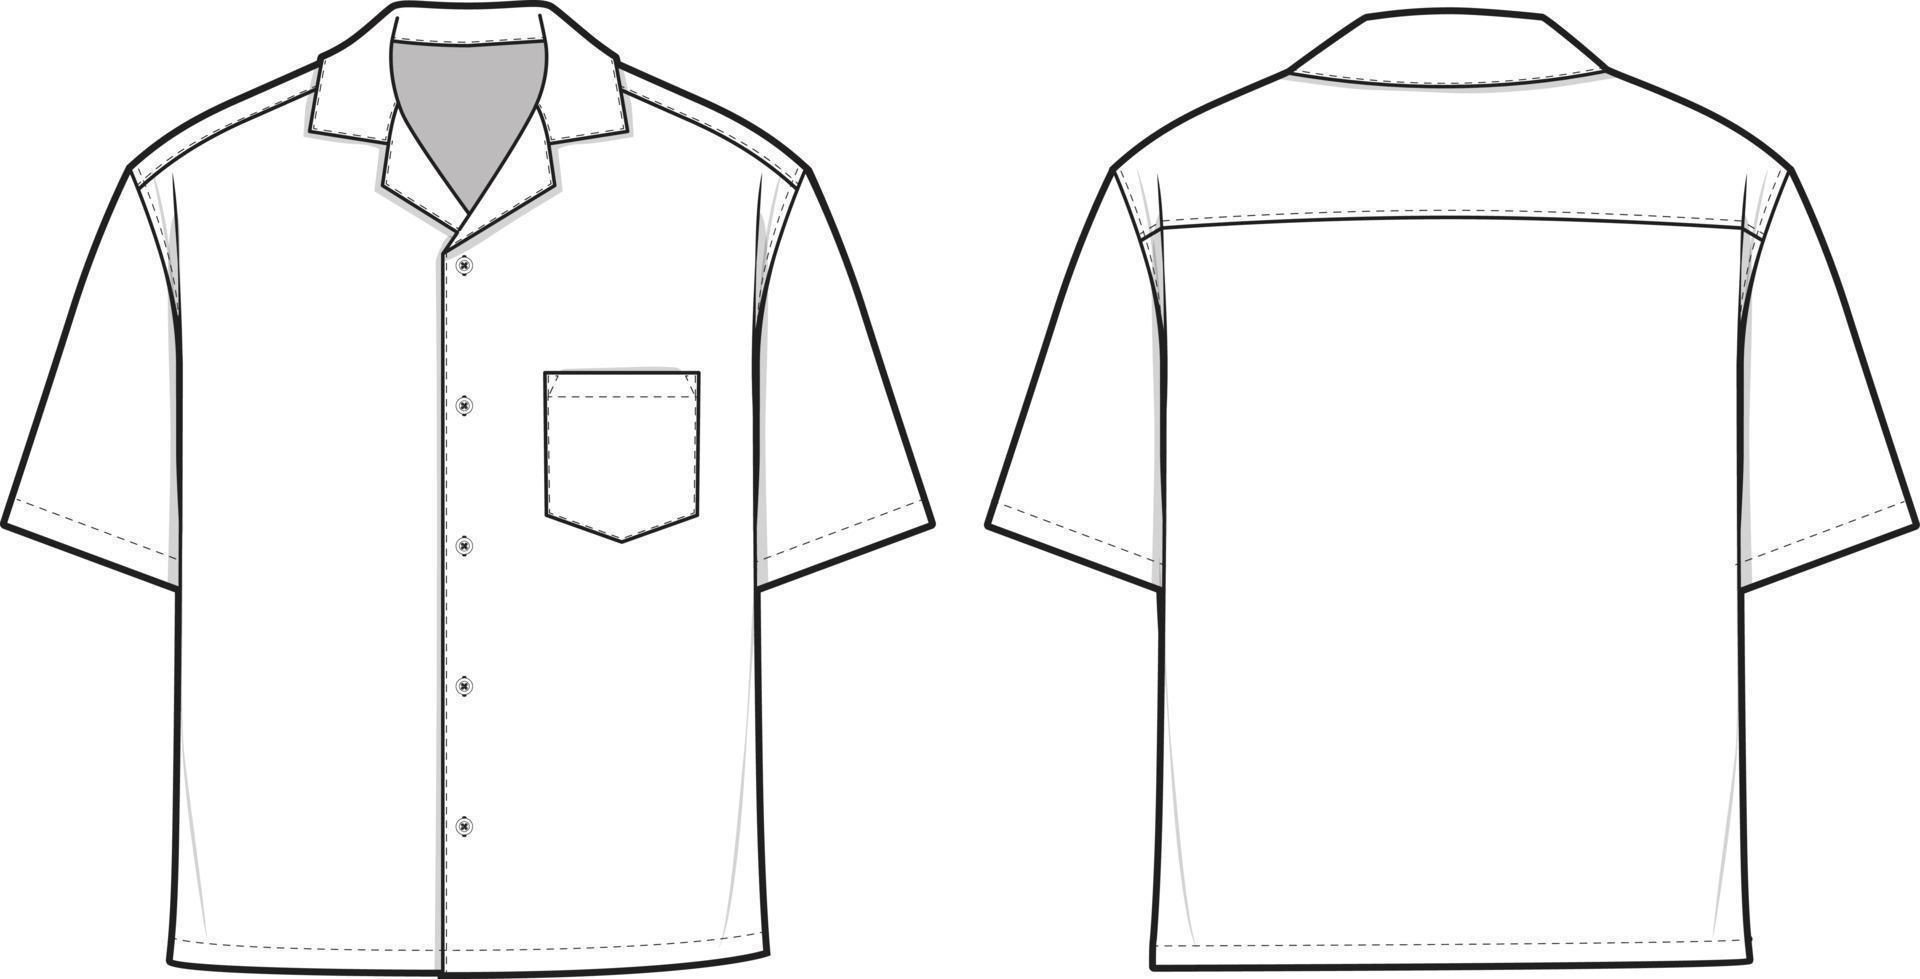 camisa de botón de campamento ilustración de dibujo técnico plano de manga corta plantilla de maqueta en blanco para diseño de moda y paquetes tecnológicos boceto técnico cad vector